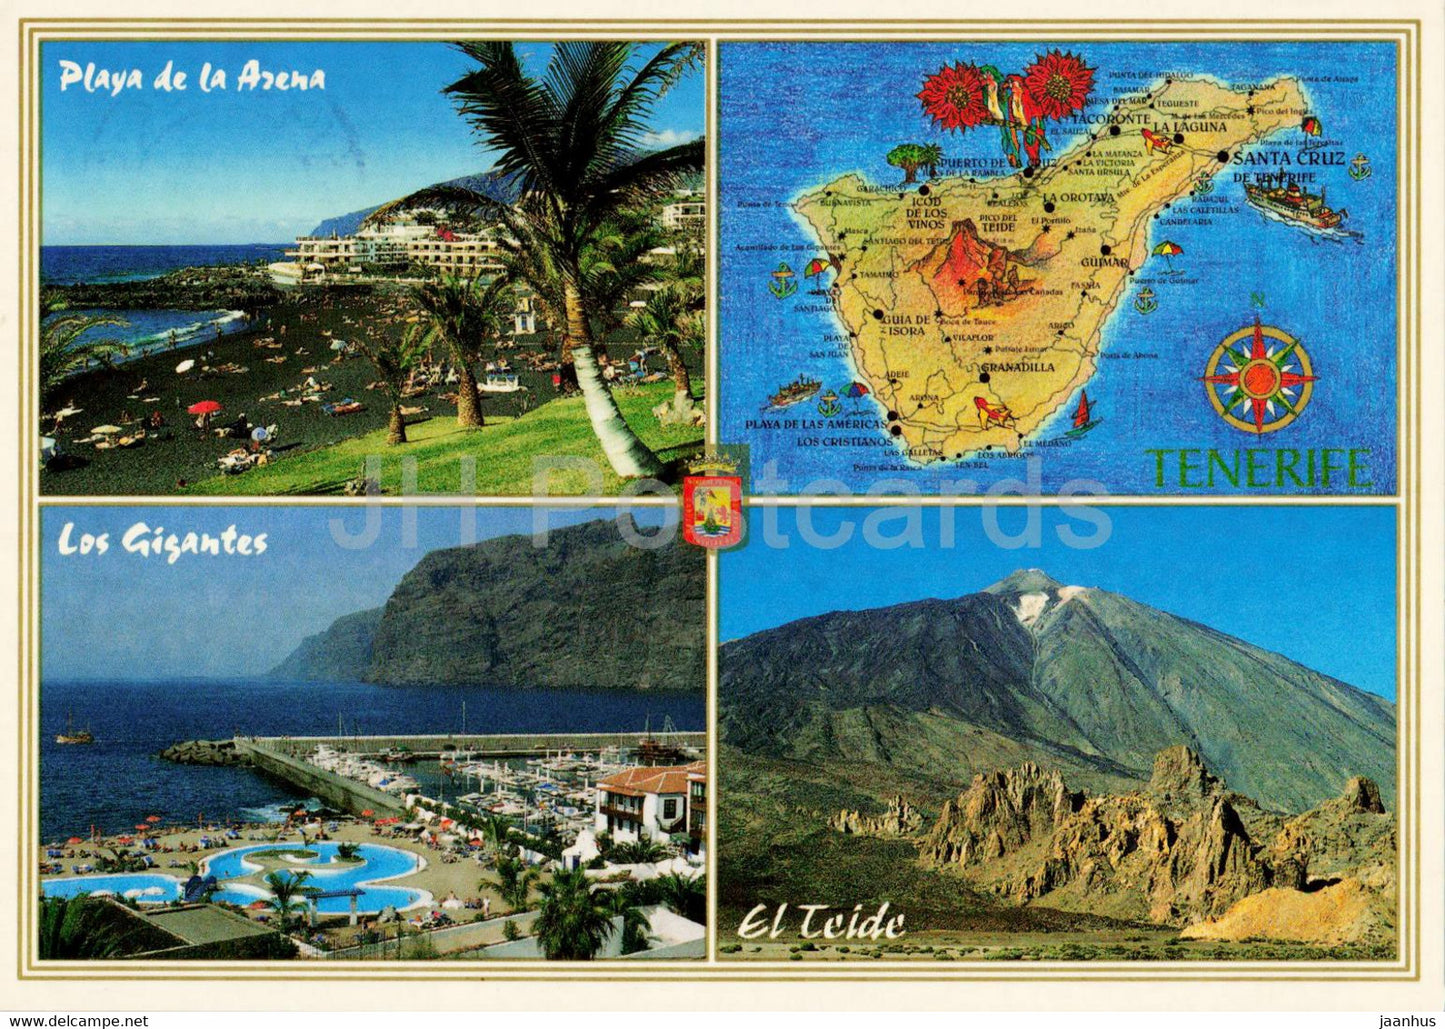 Islas Canarias - Playa de la Arena y Acantilado de los Gigantes - El Teide - Tenerife - map - 529 - 2001 - Spain - used - JH Postcards